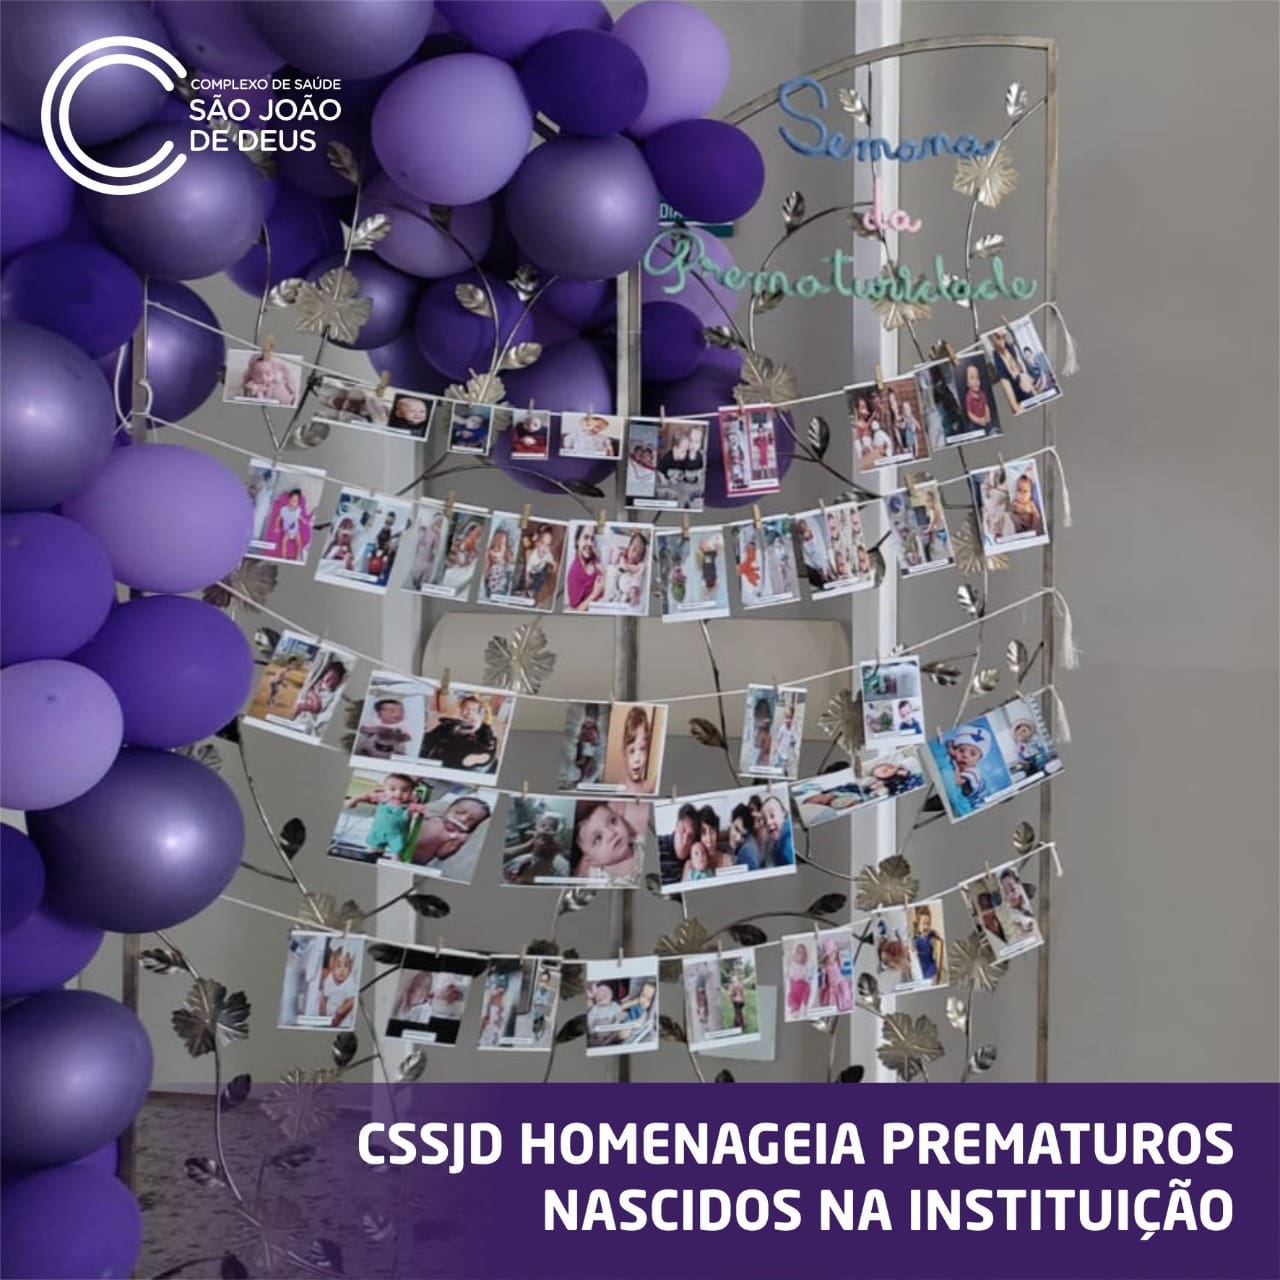 CSSJD homenageia prematuros nascidos na instituição